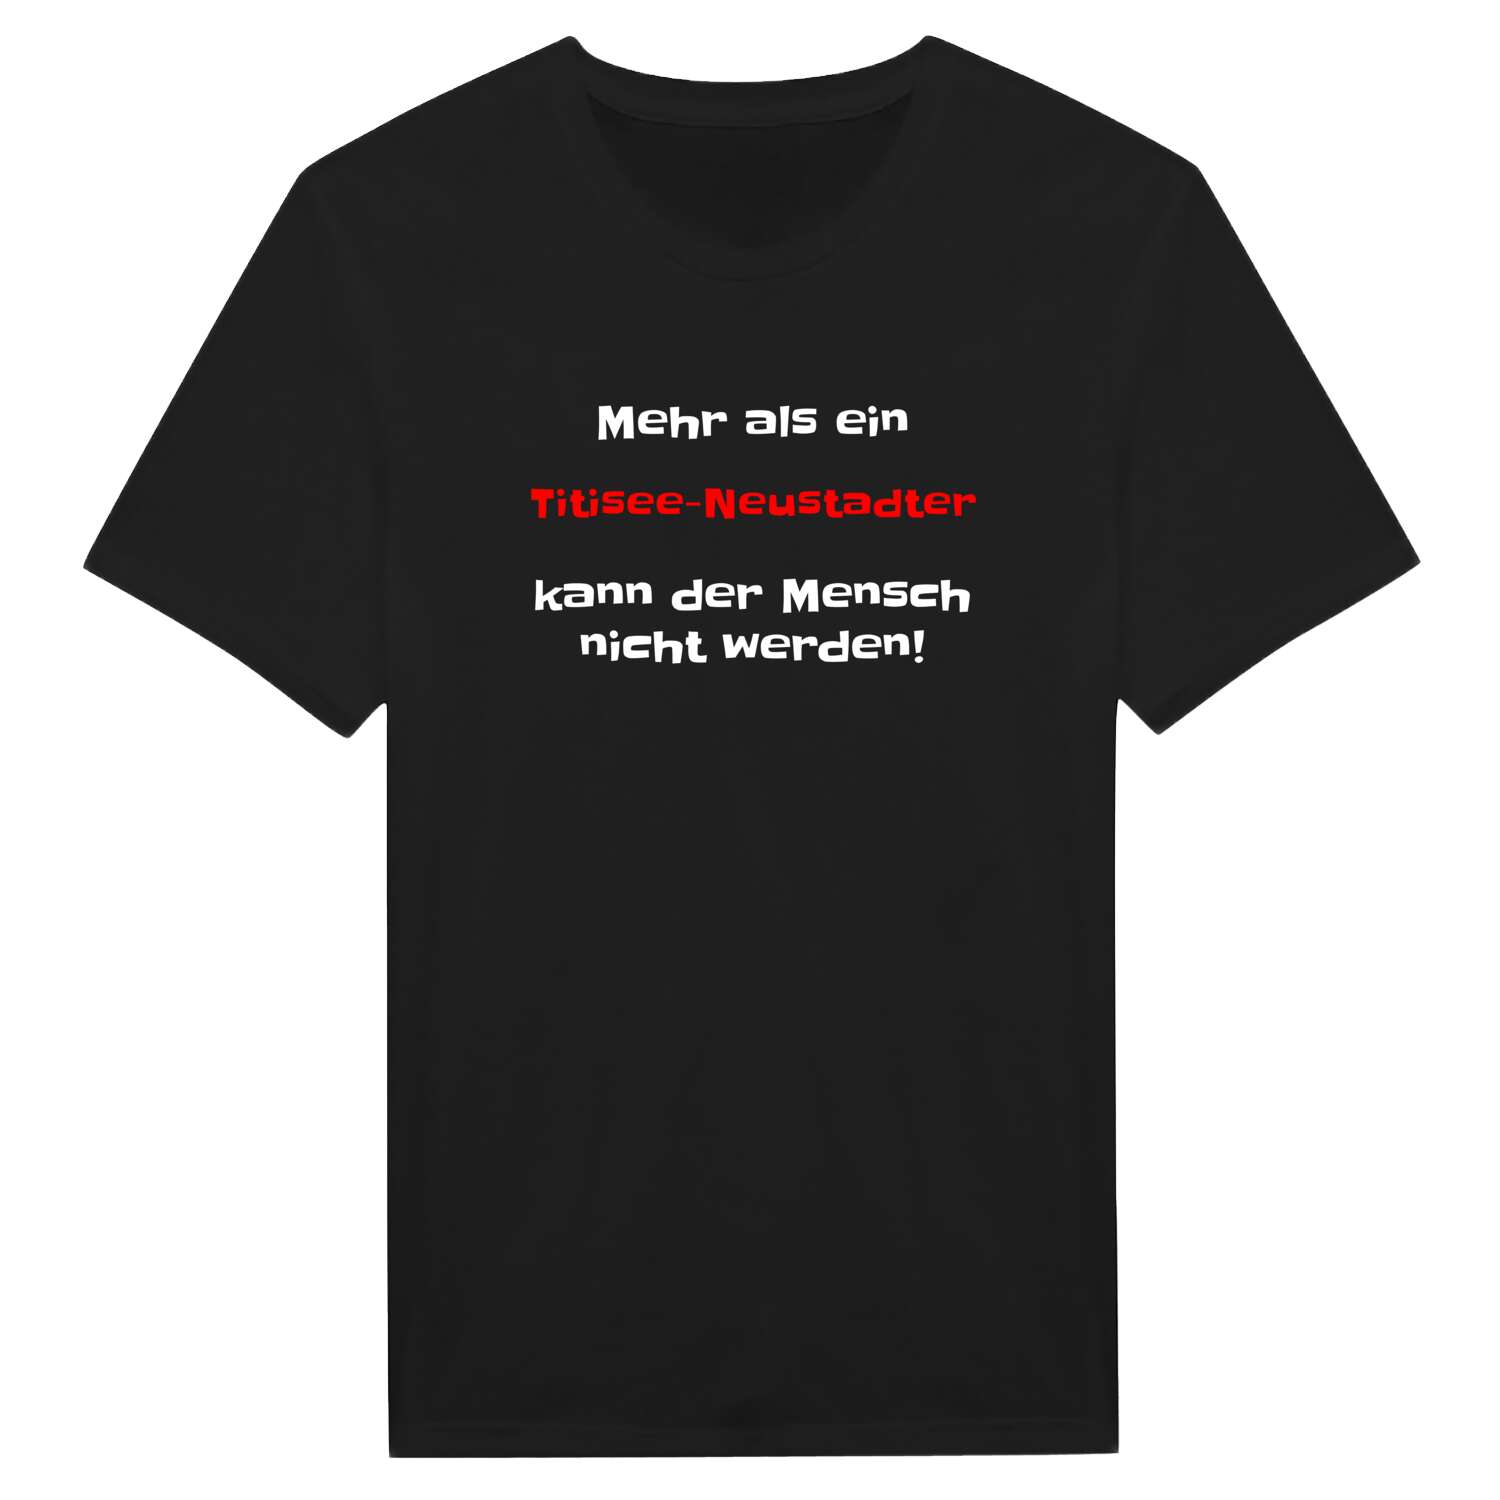 Titisee-Neustadt T-Shirt »Mehr als ein«